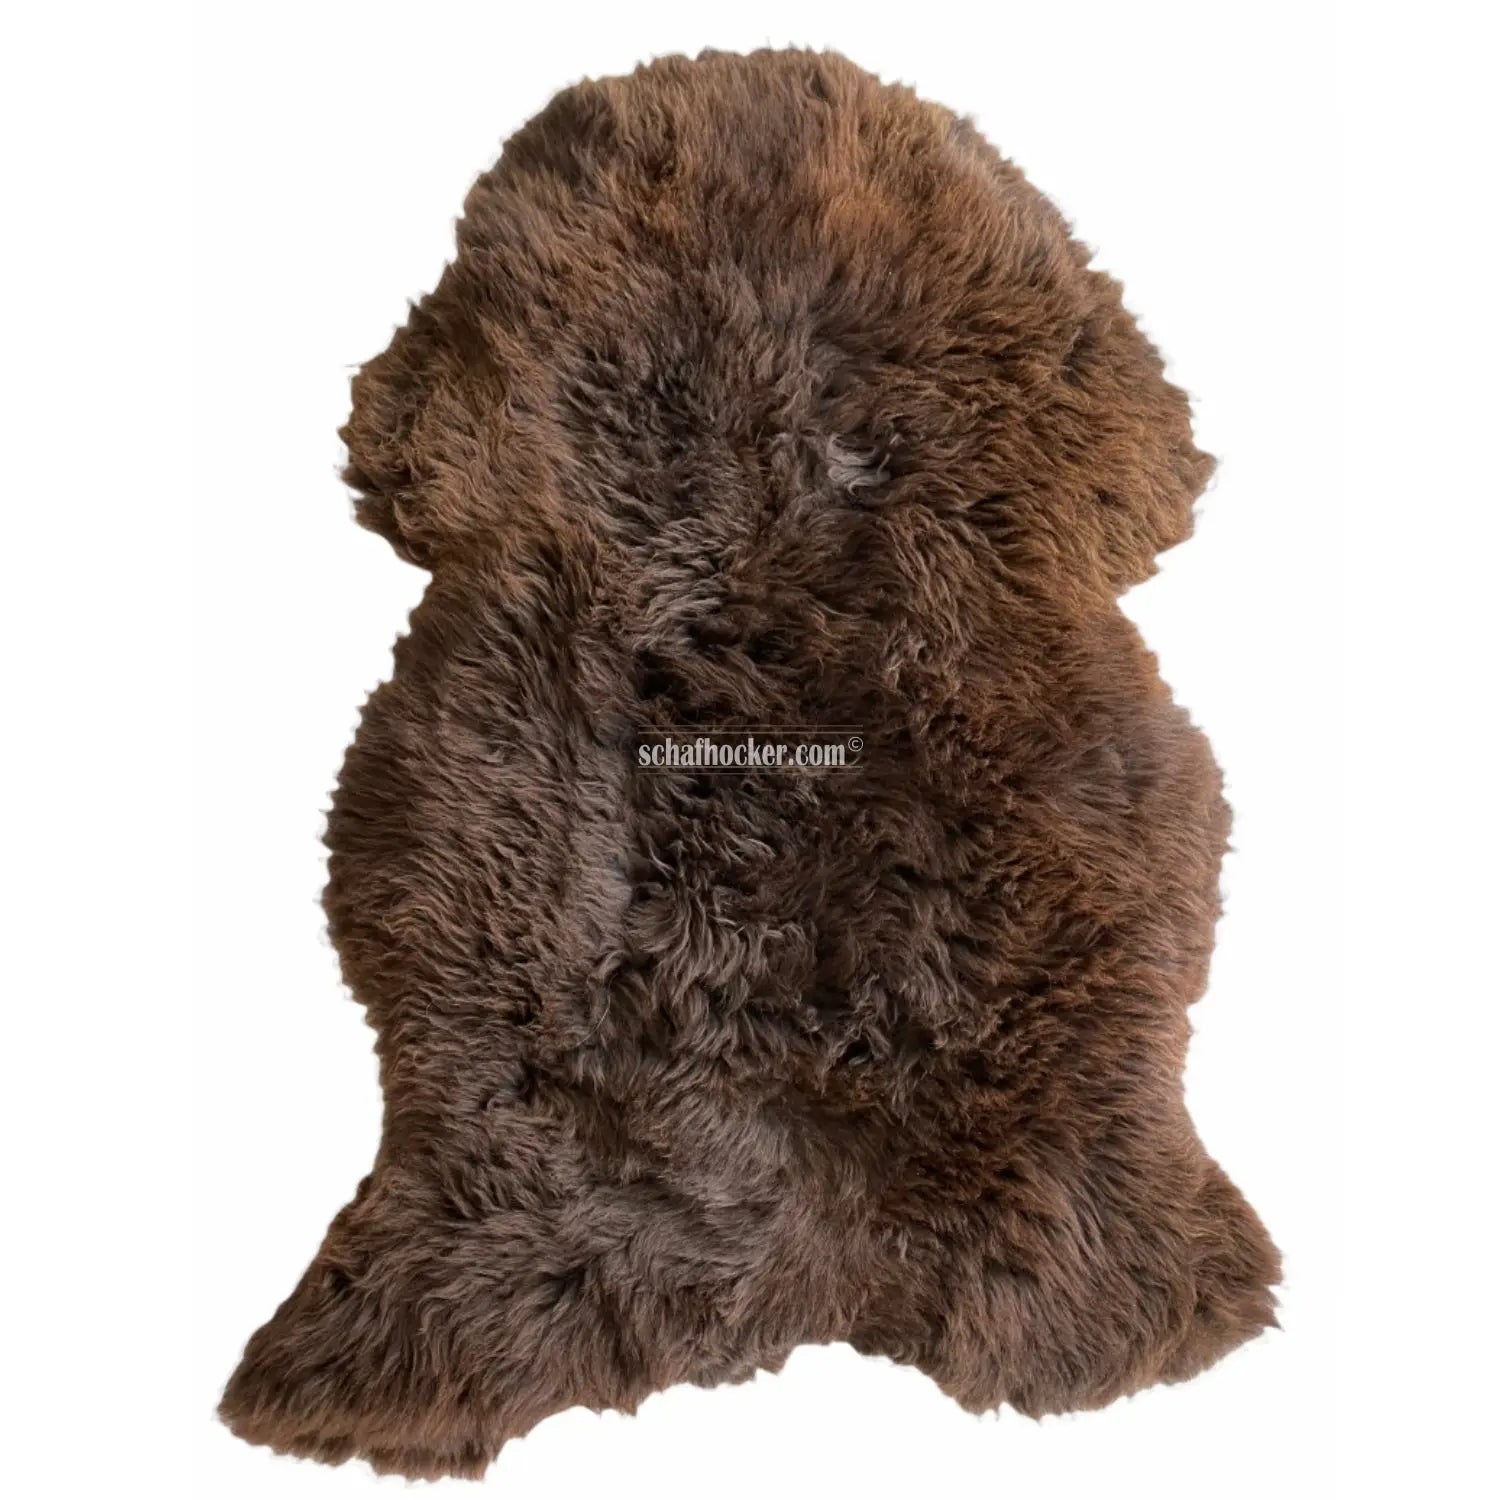 Seat cushion 110-120cm fur “brown bear brown” – handgefertigte